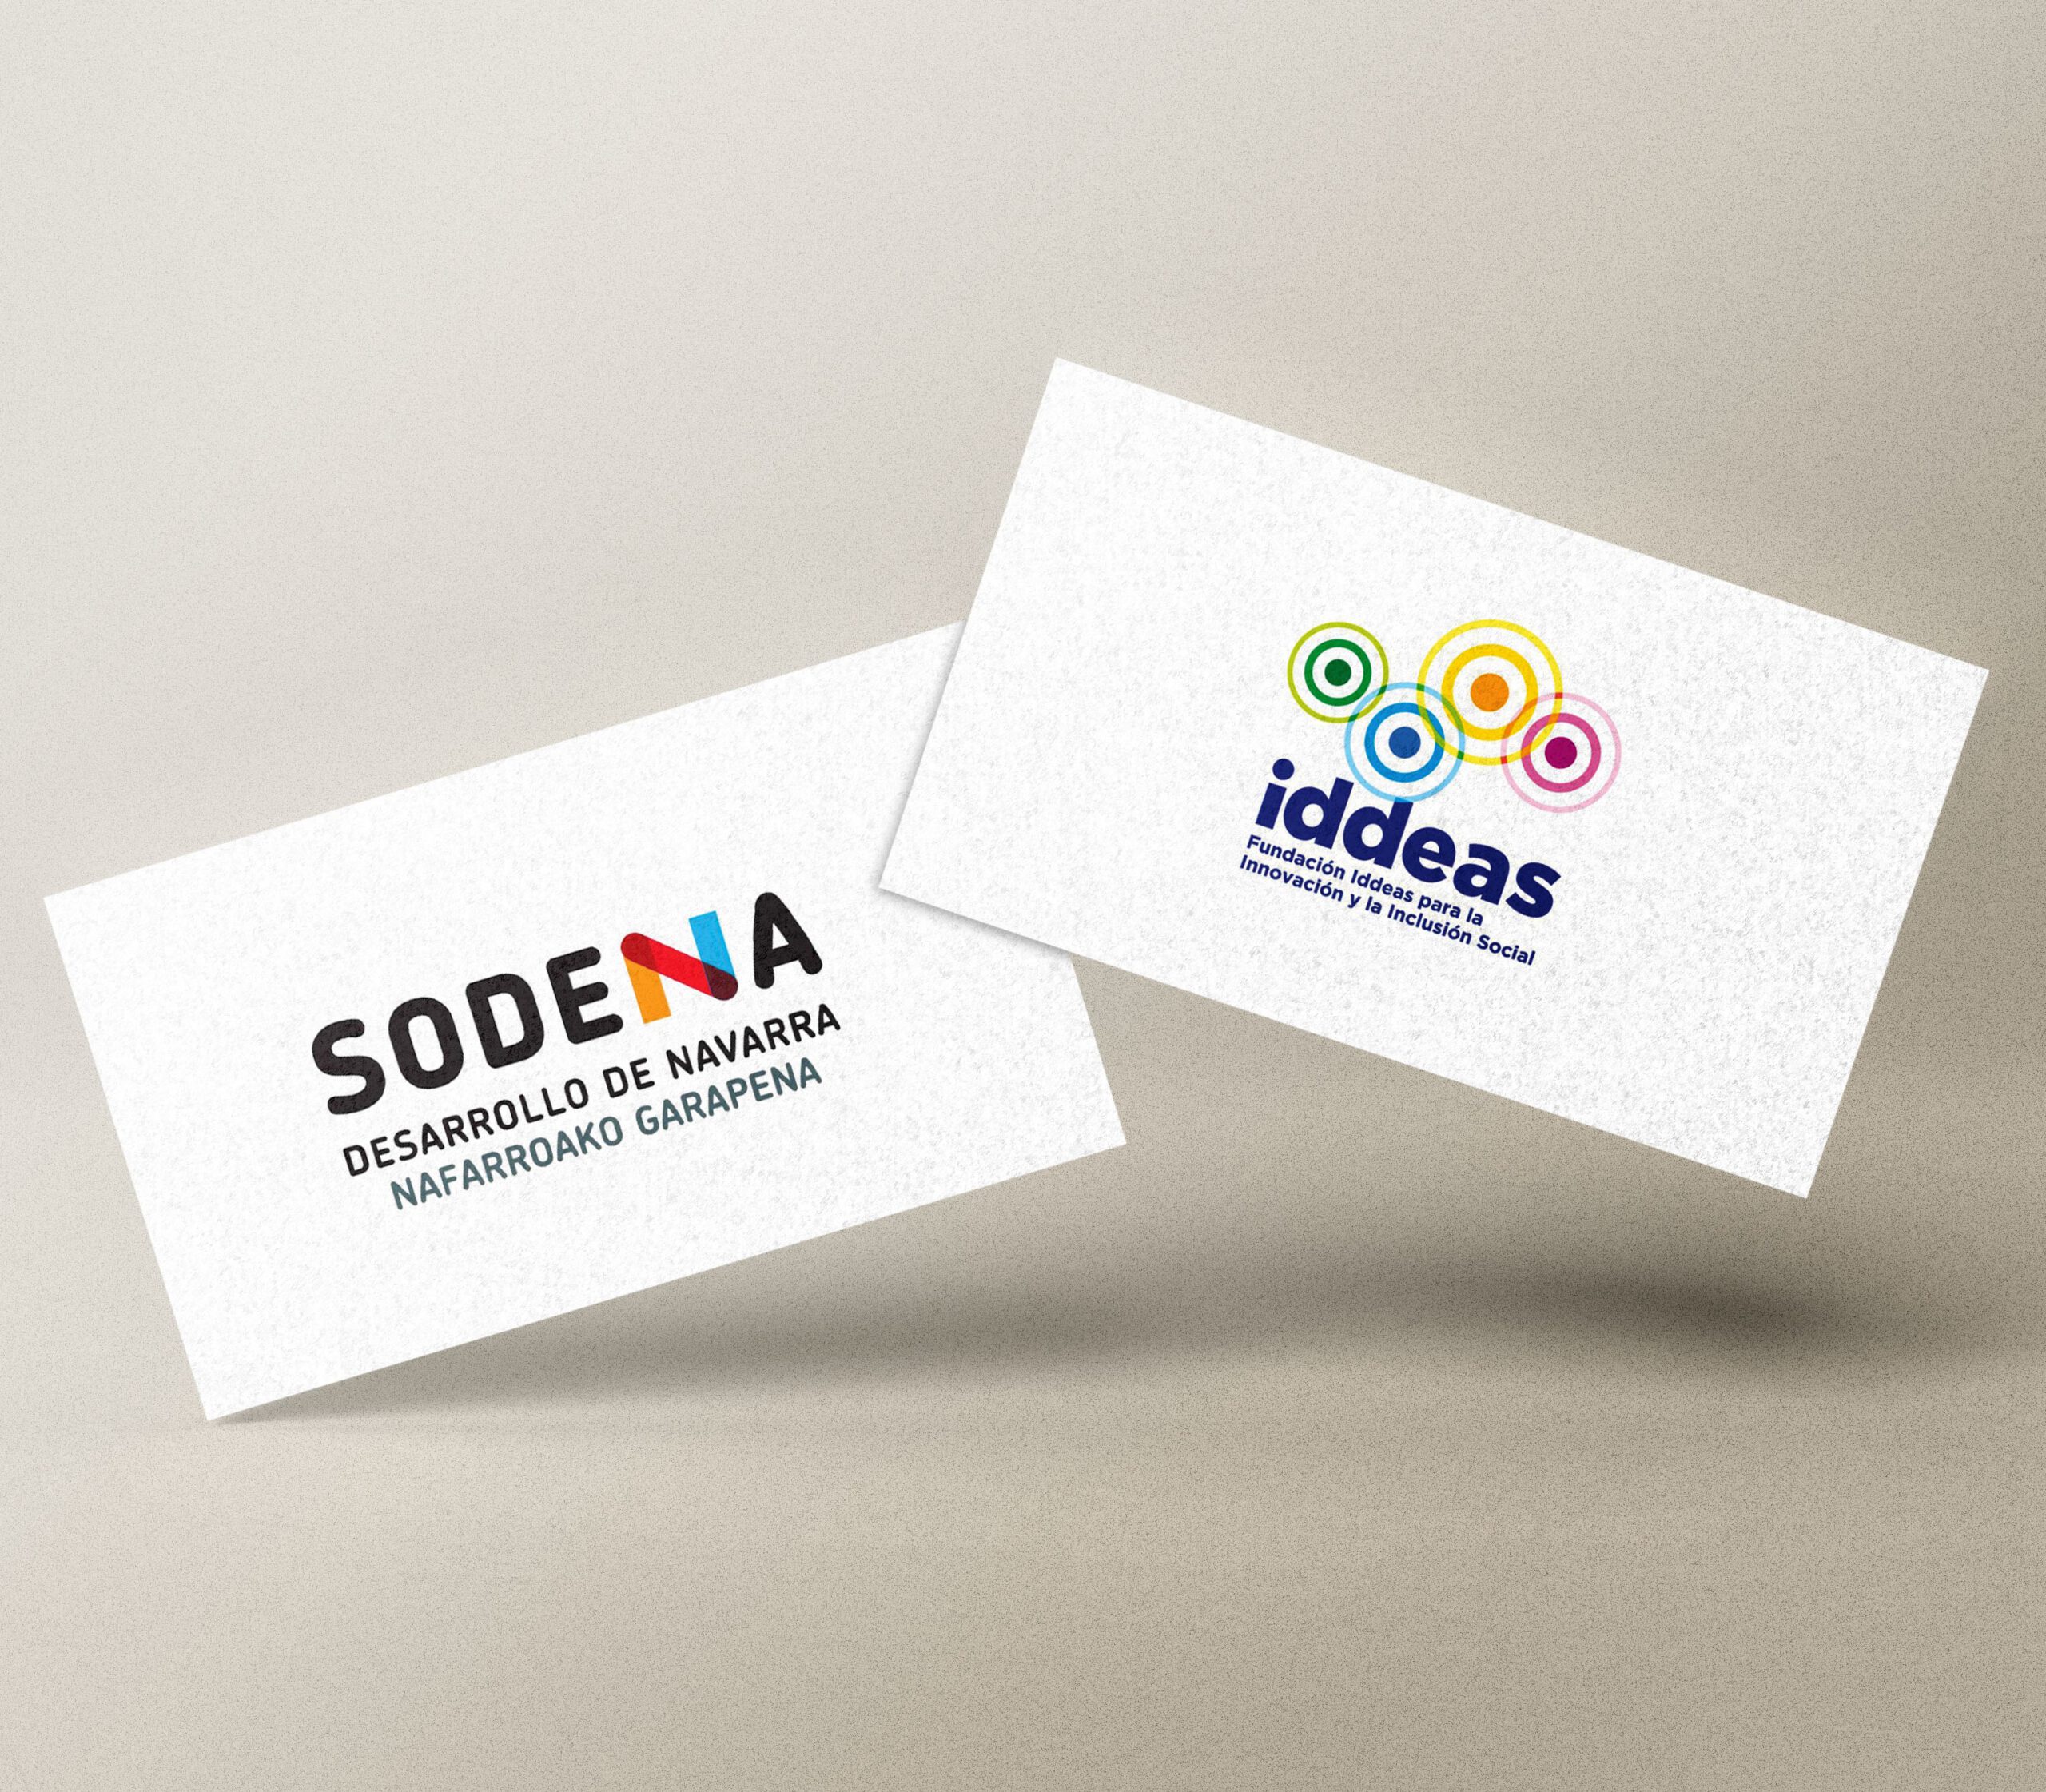 Fotografía de una tarjeta con el logo de SODENA y otra al lado con el logo de la Fundación Iddeas.